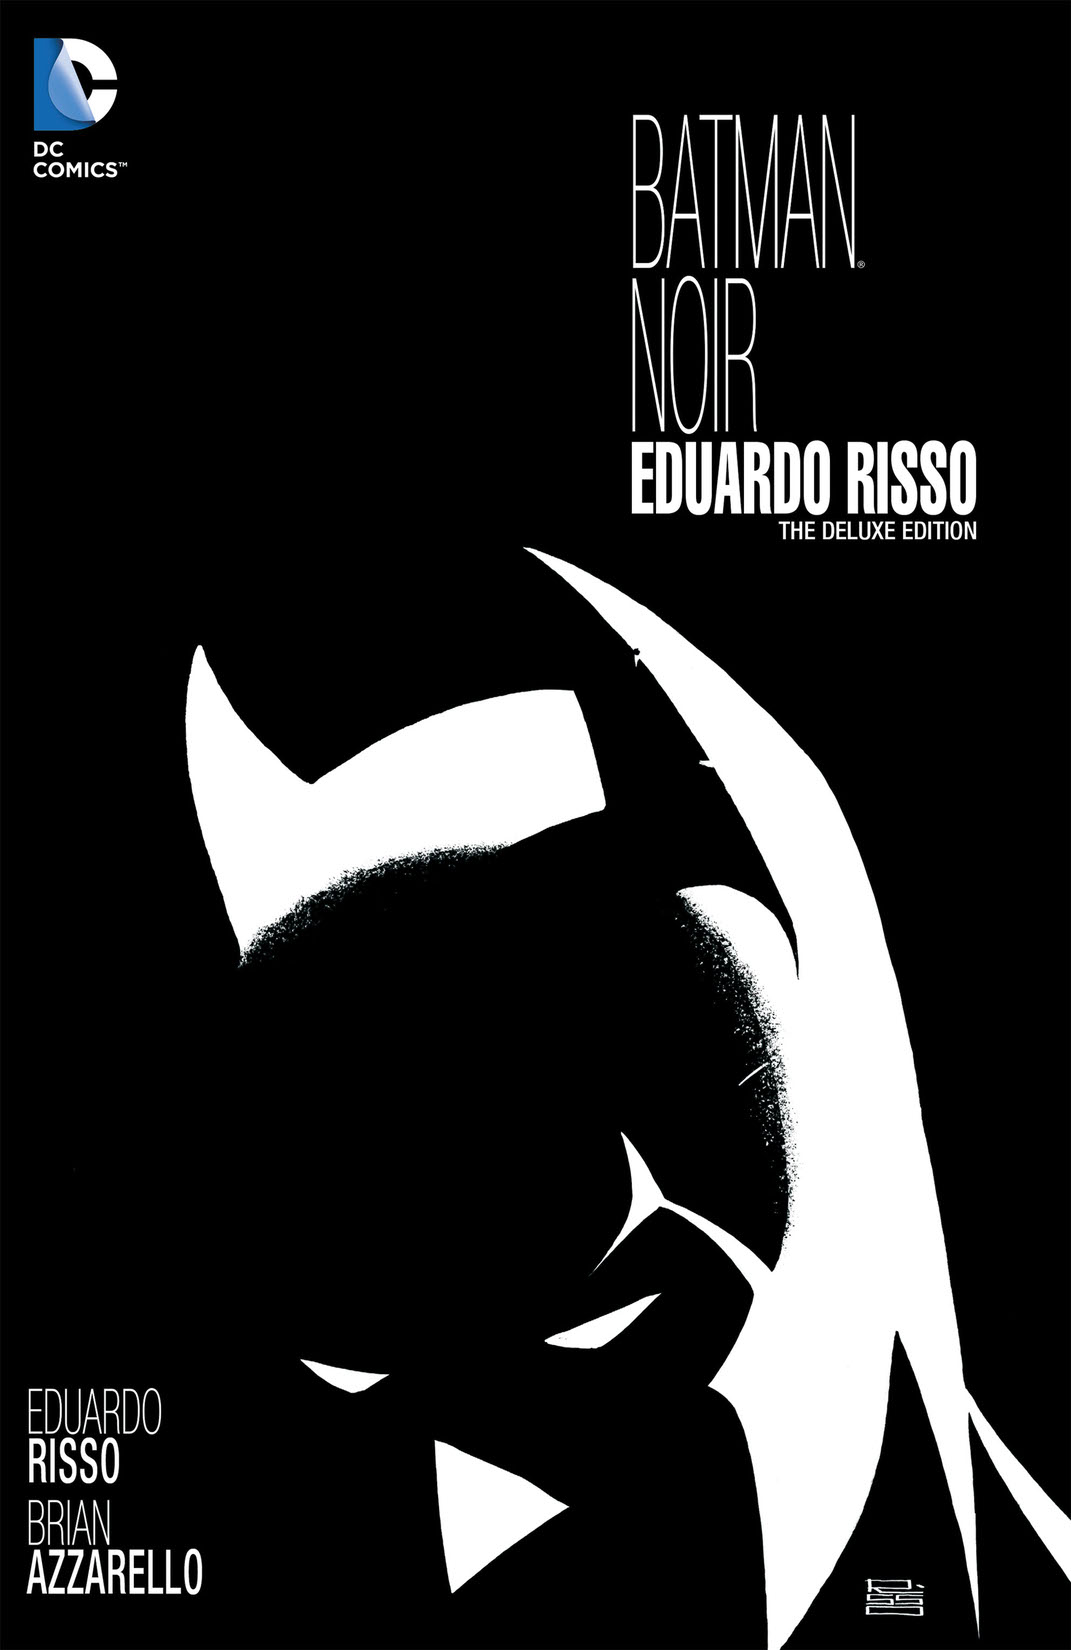 Batman Noir: Eduardo Risso: The Deluxe Edition preview images